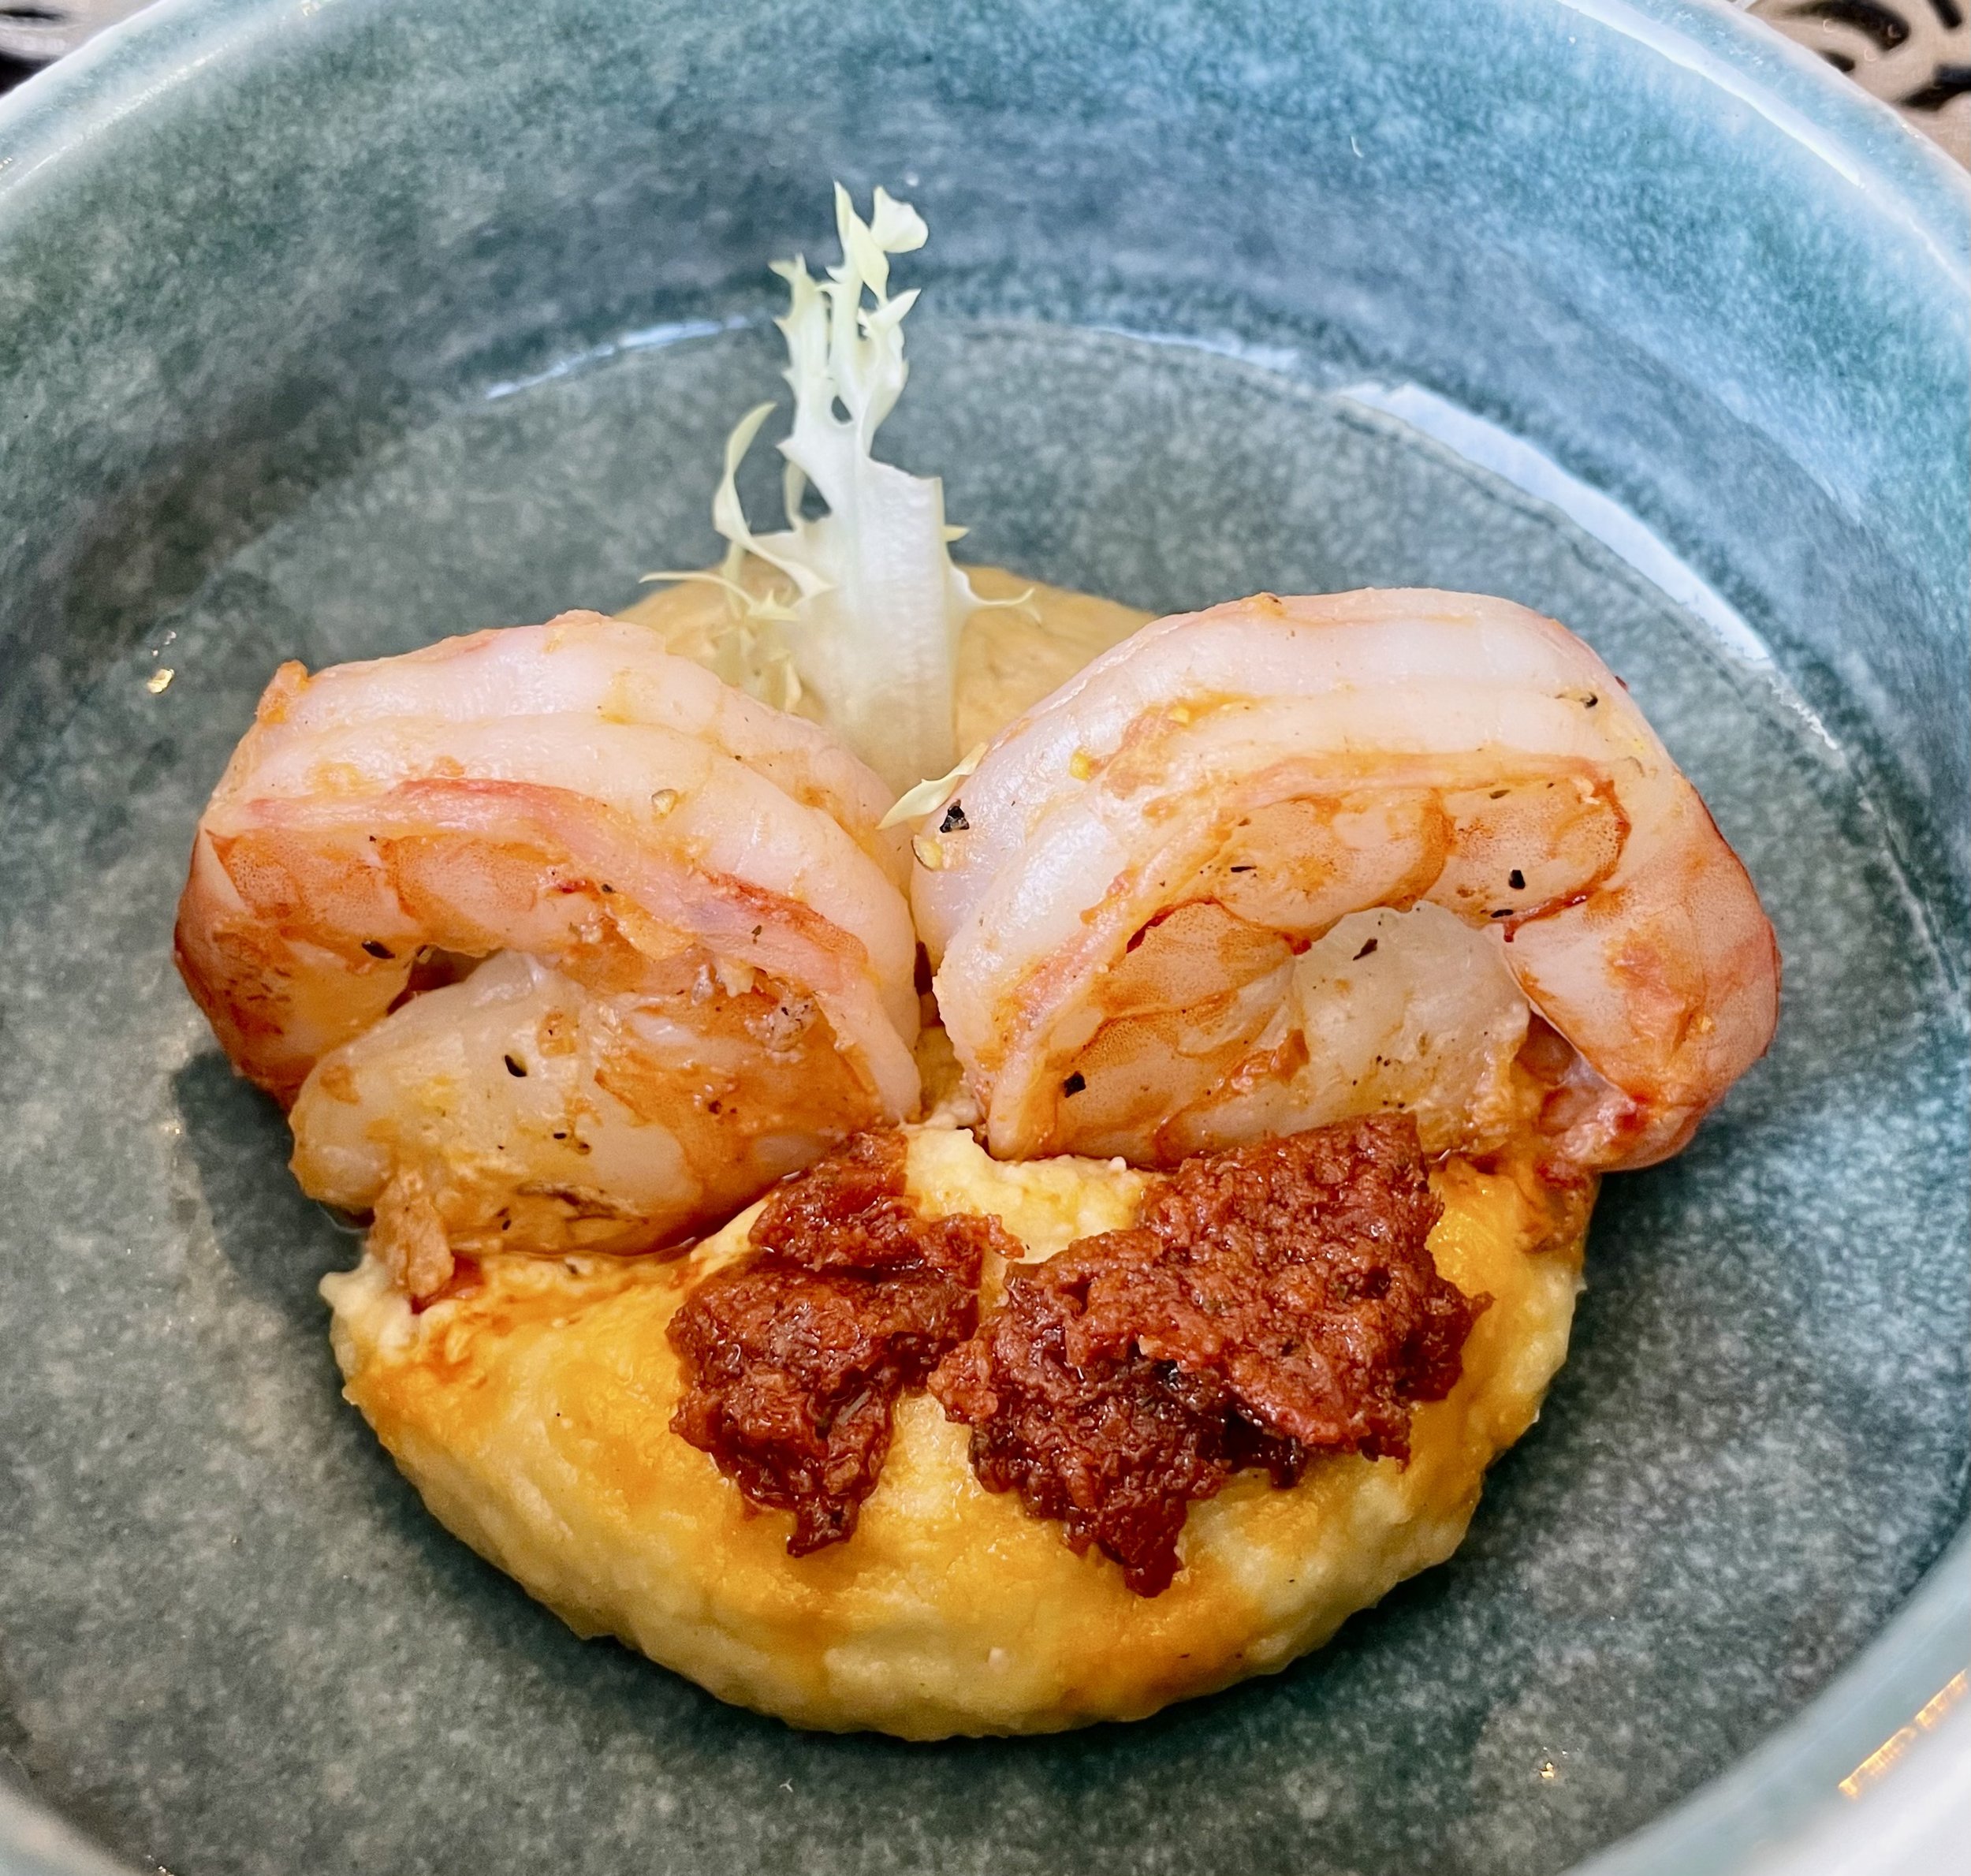  Chef's Table ‘Get the Taste’ - shrimp, houmous, tomato pesto 